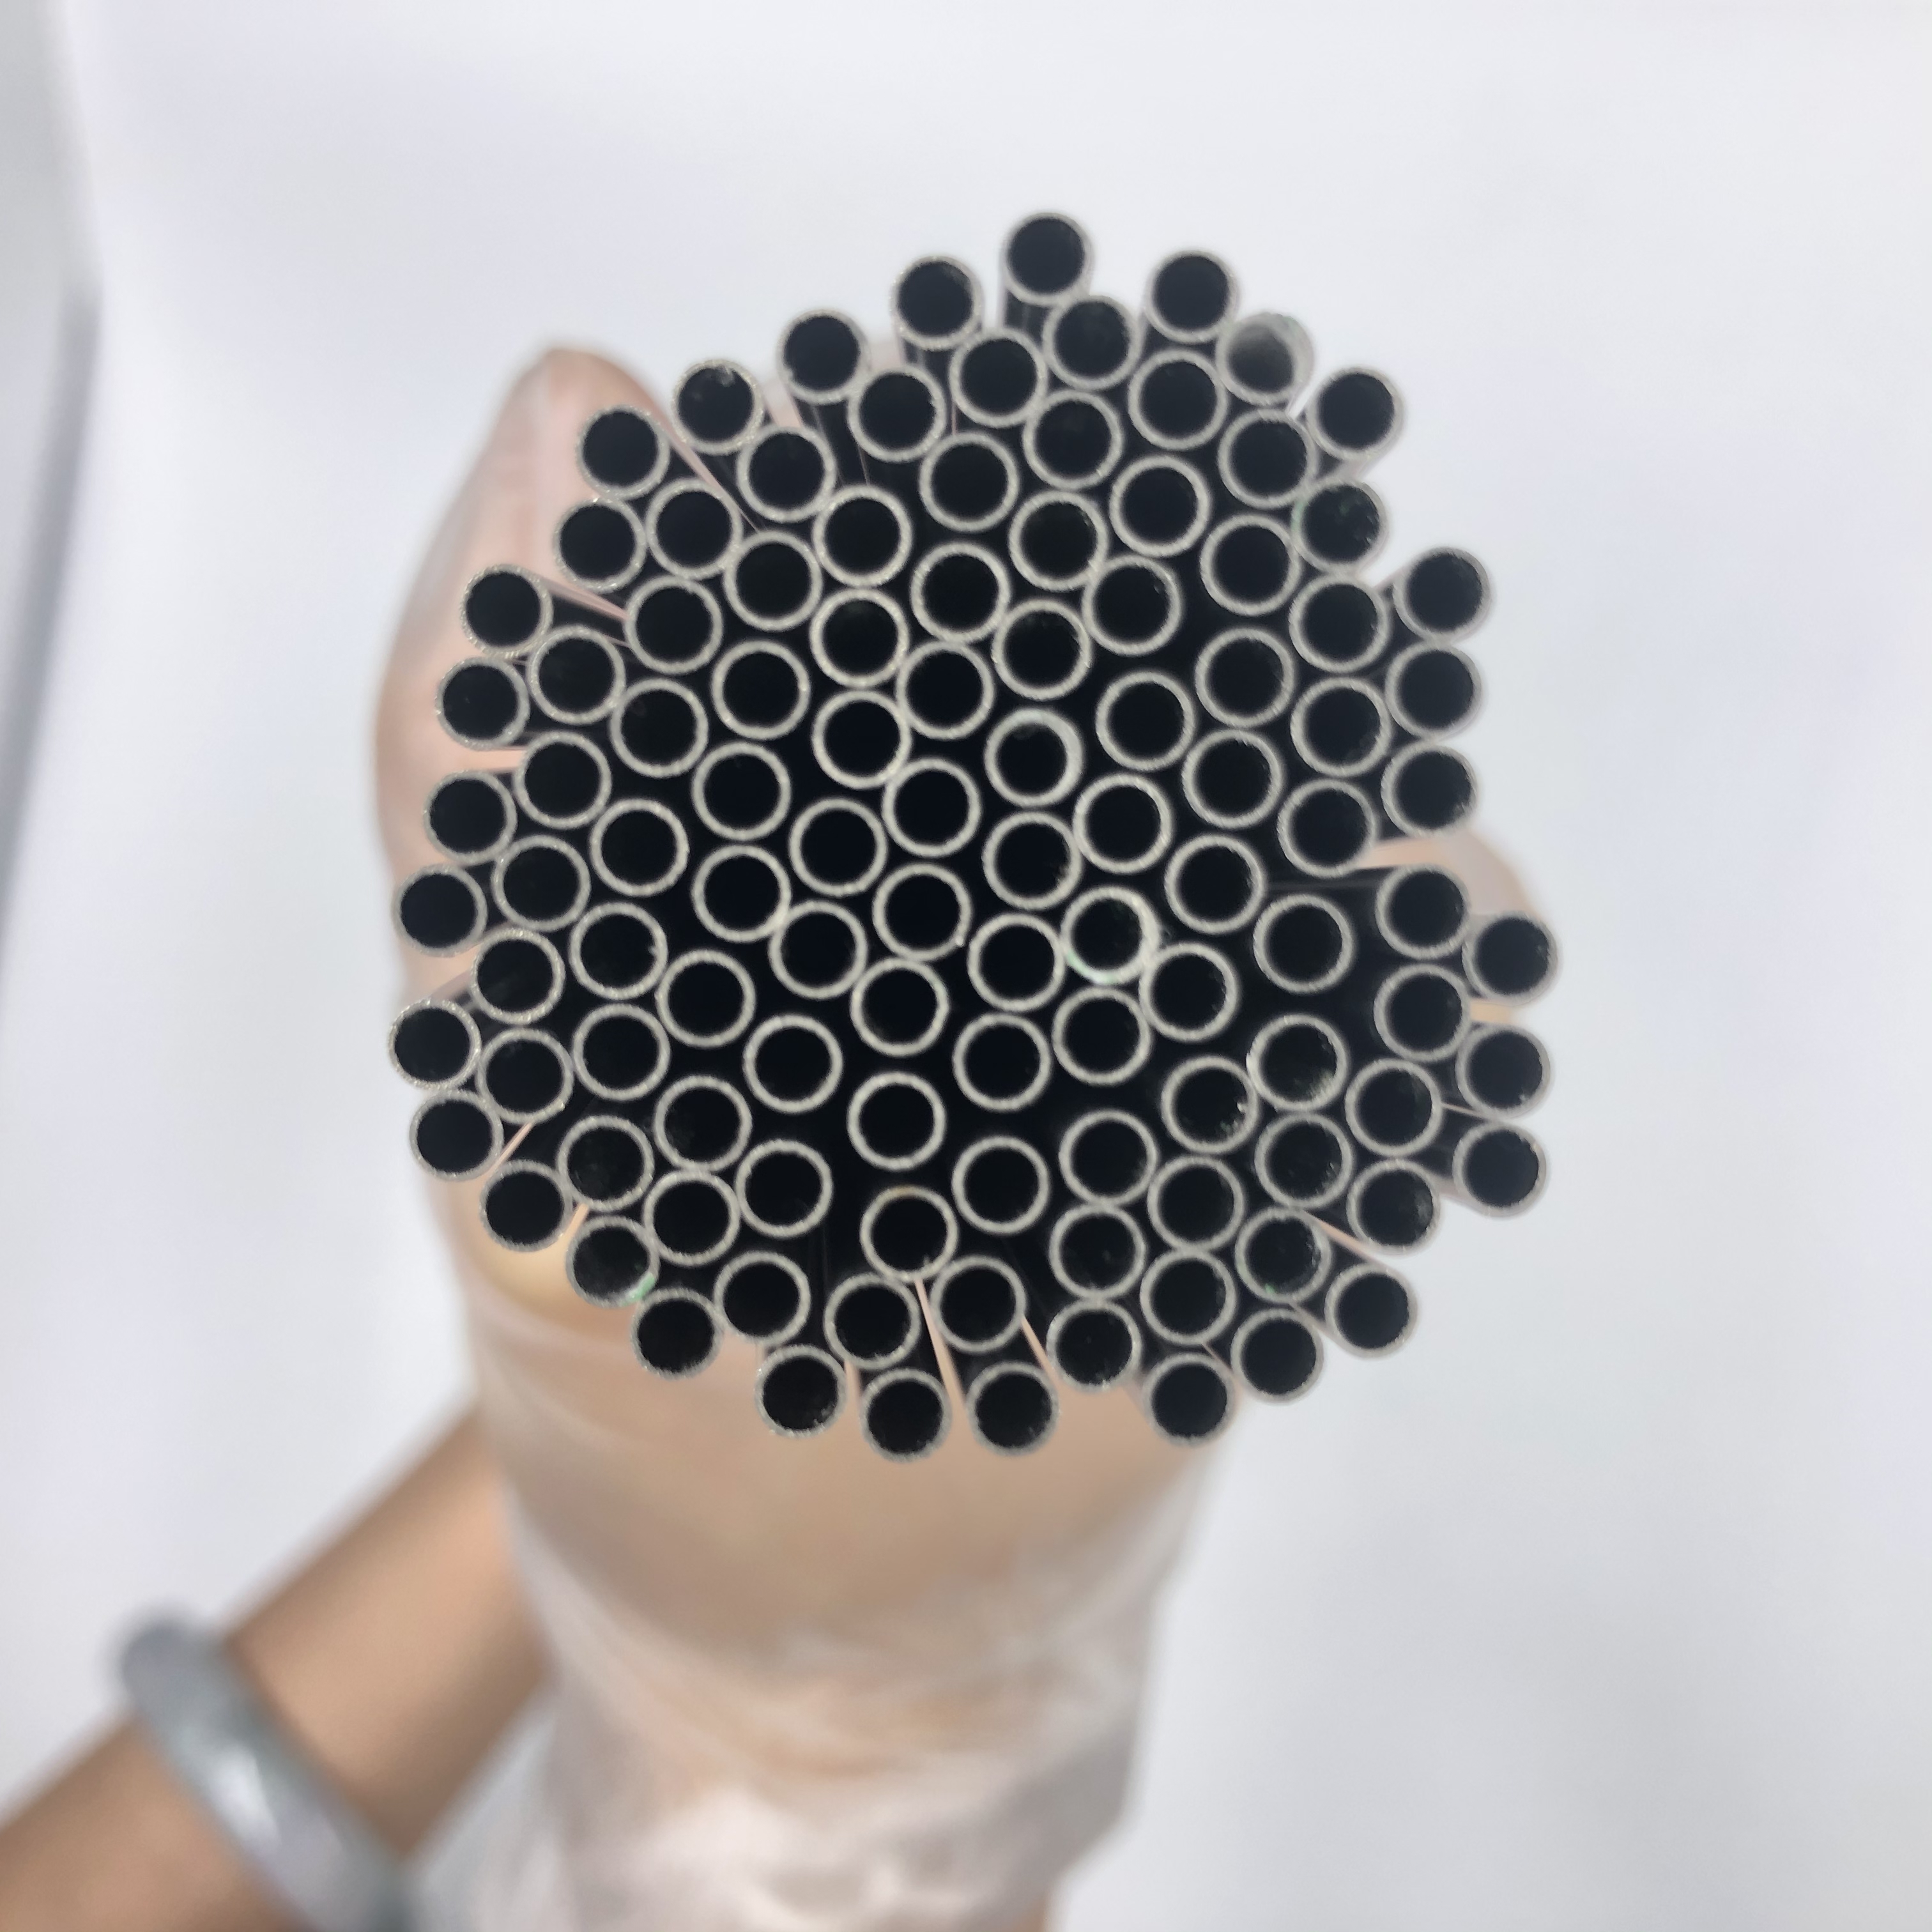 6mm stainless steel capillary tube